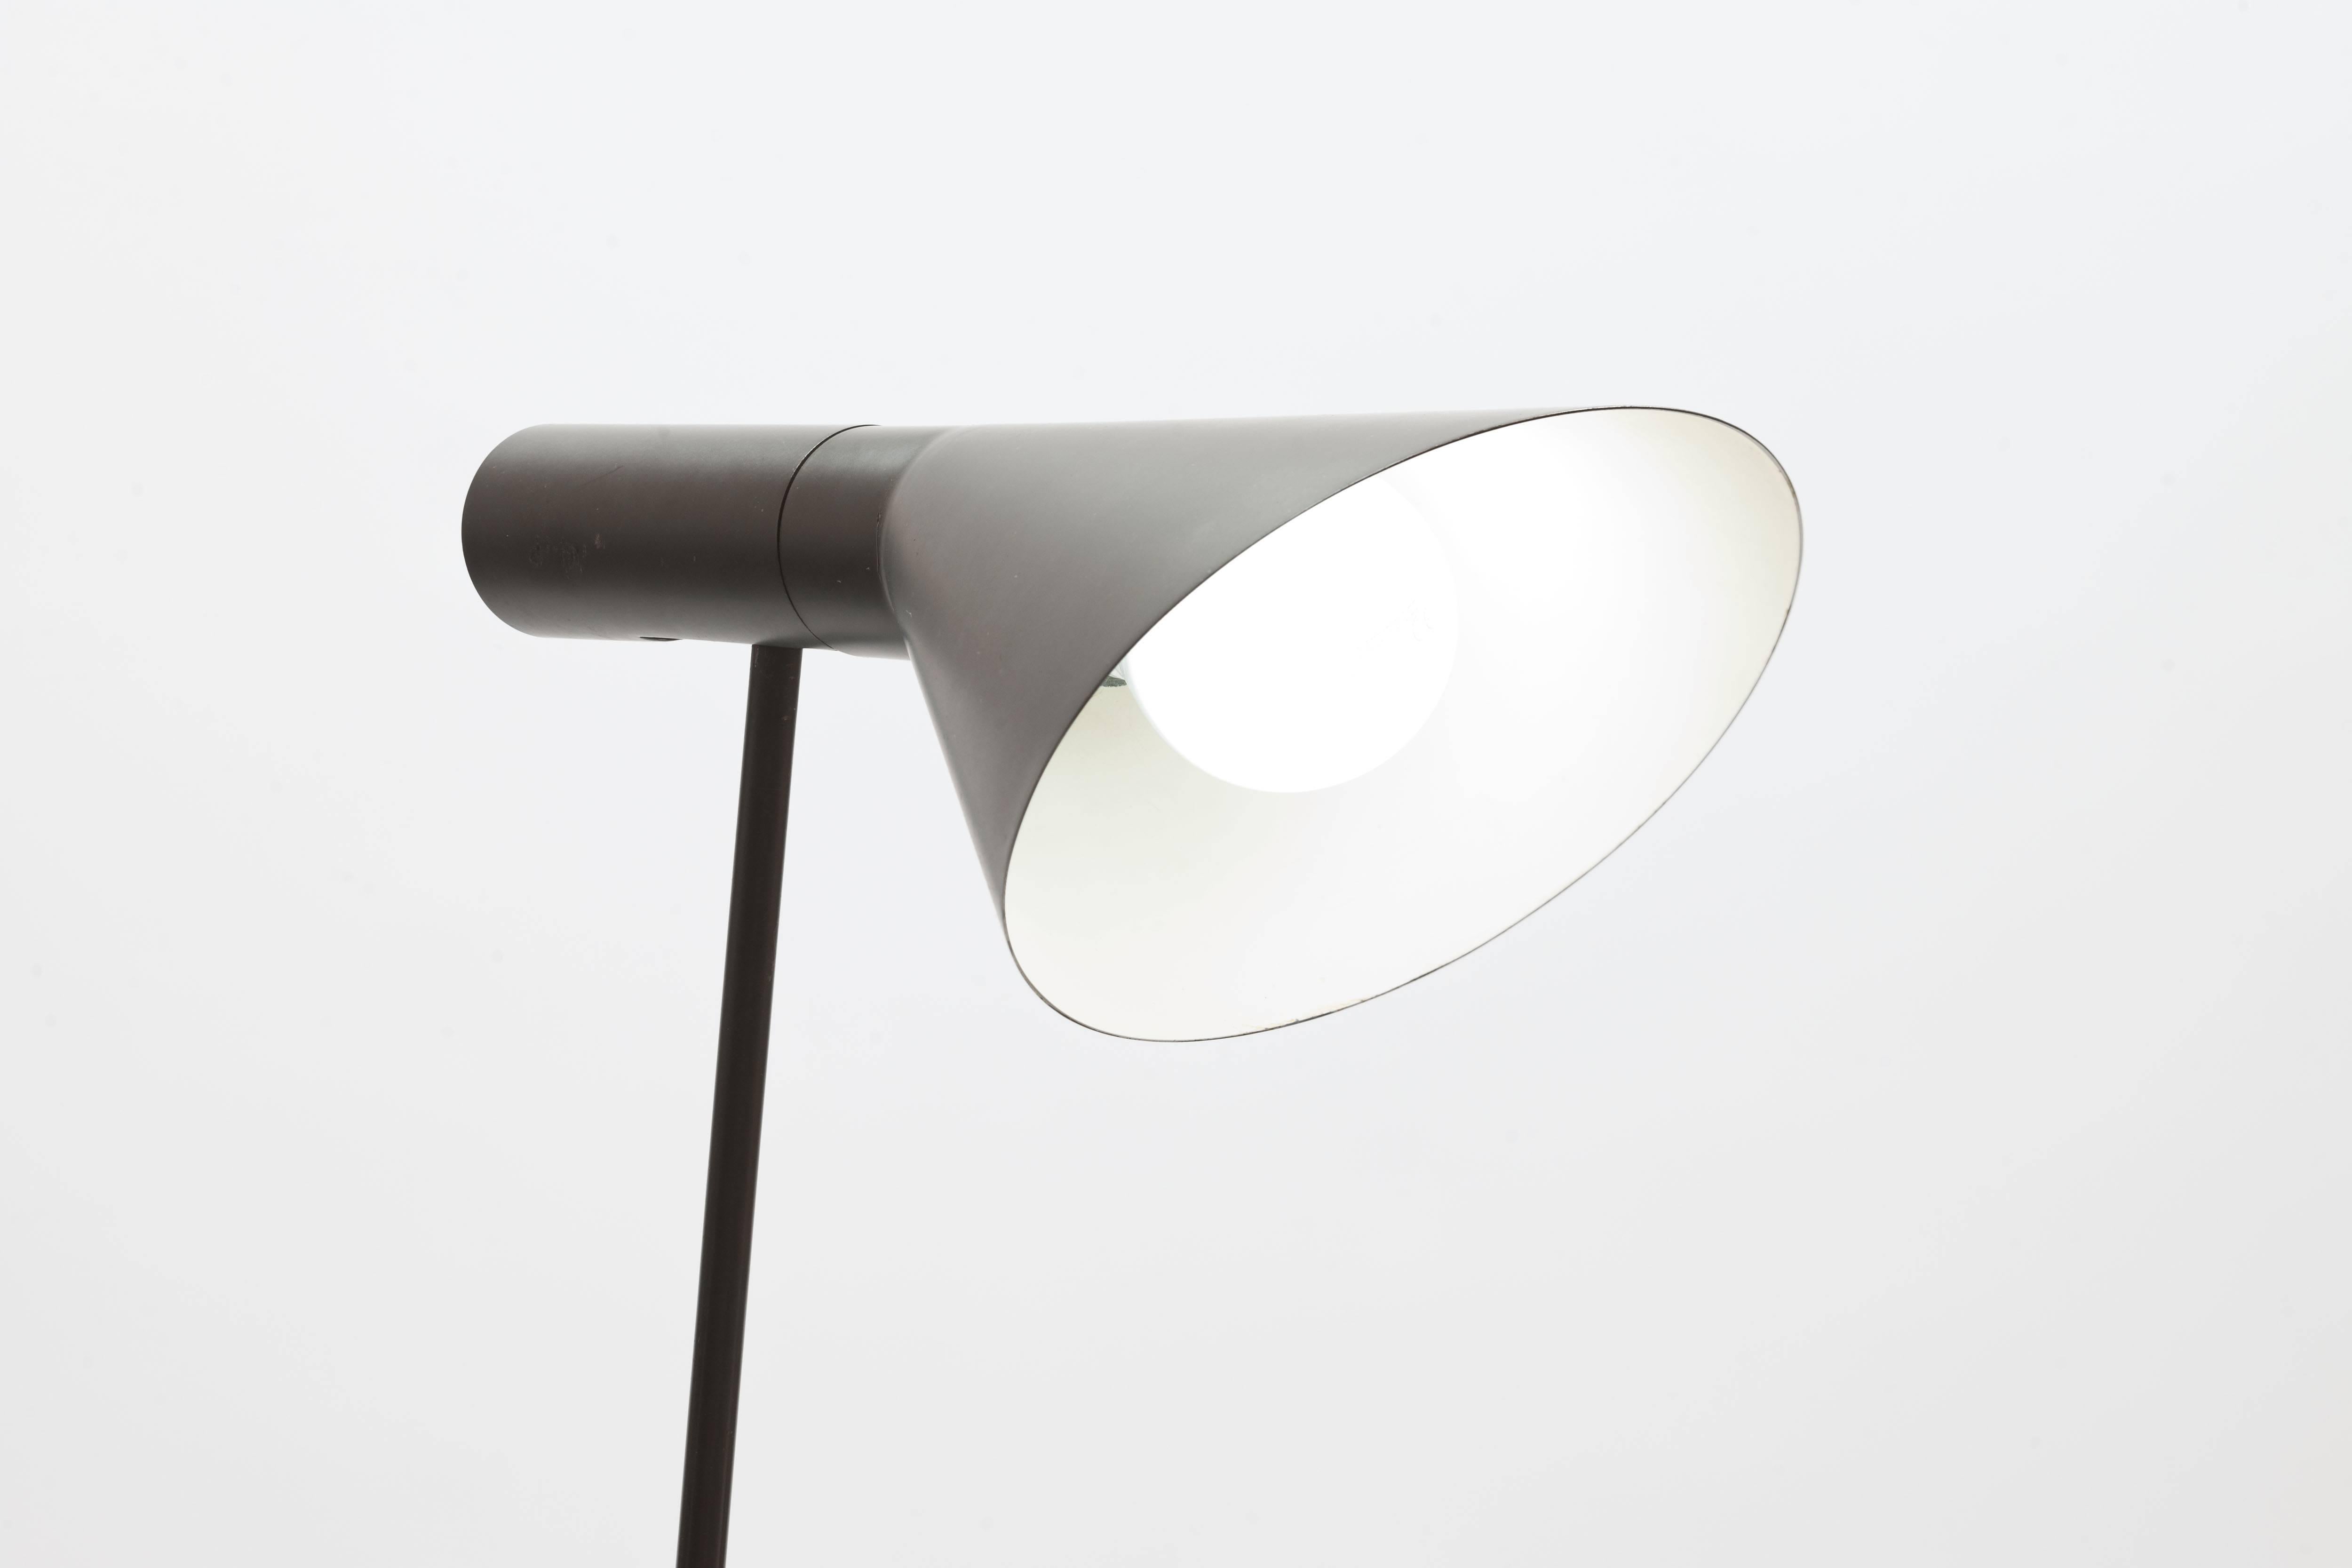 Steel Early Vintage Arne Jacobsen AJ Visor Floor Lamp by Louis Poulsen